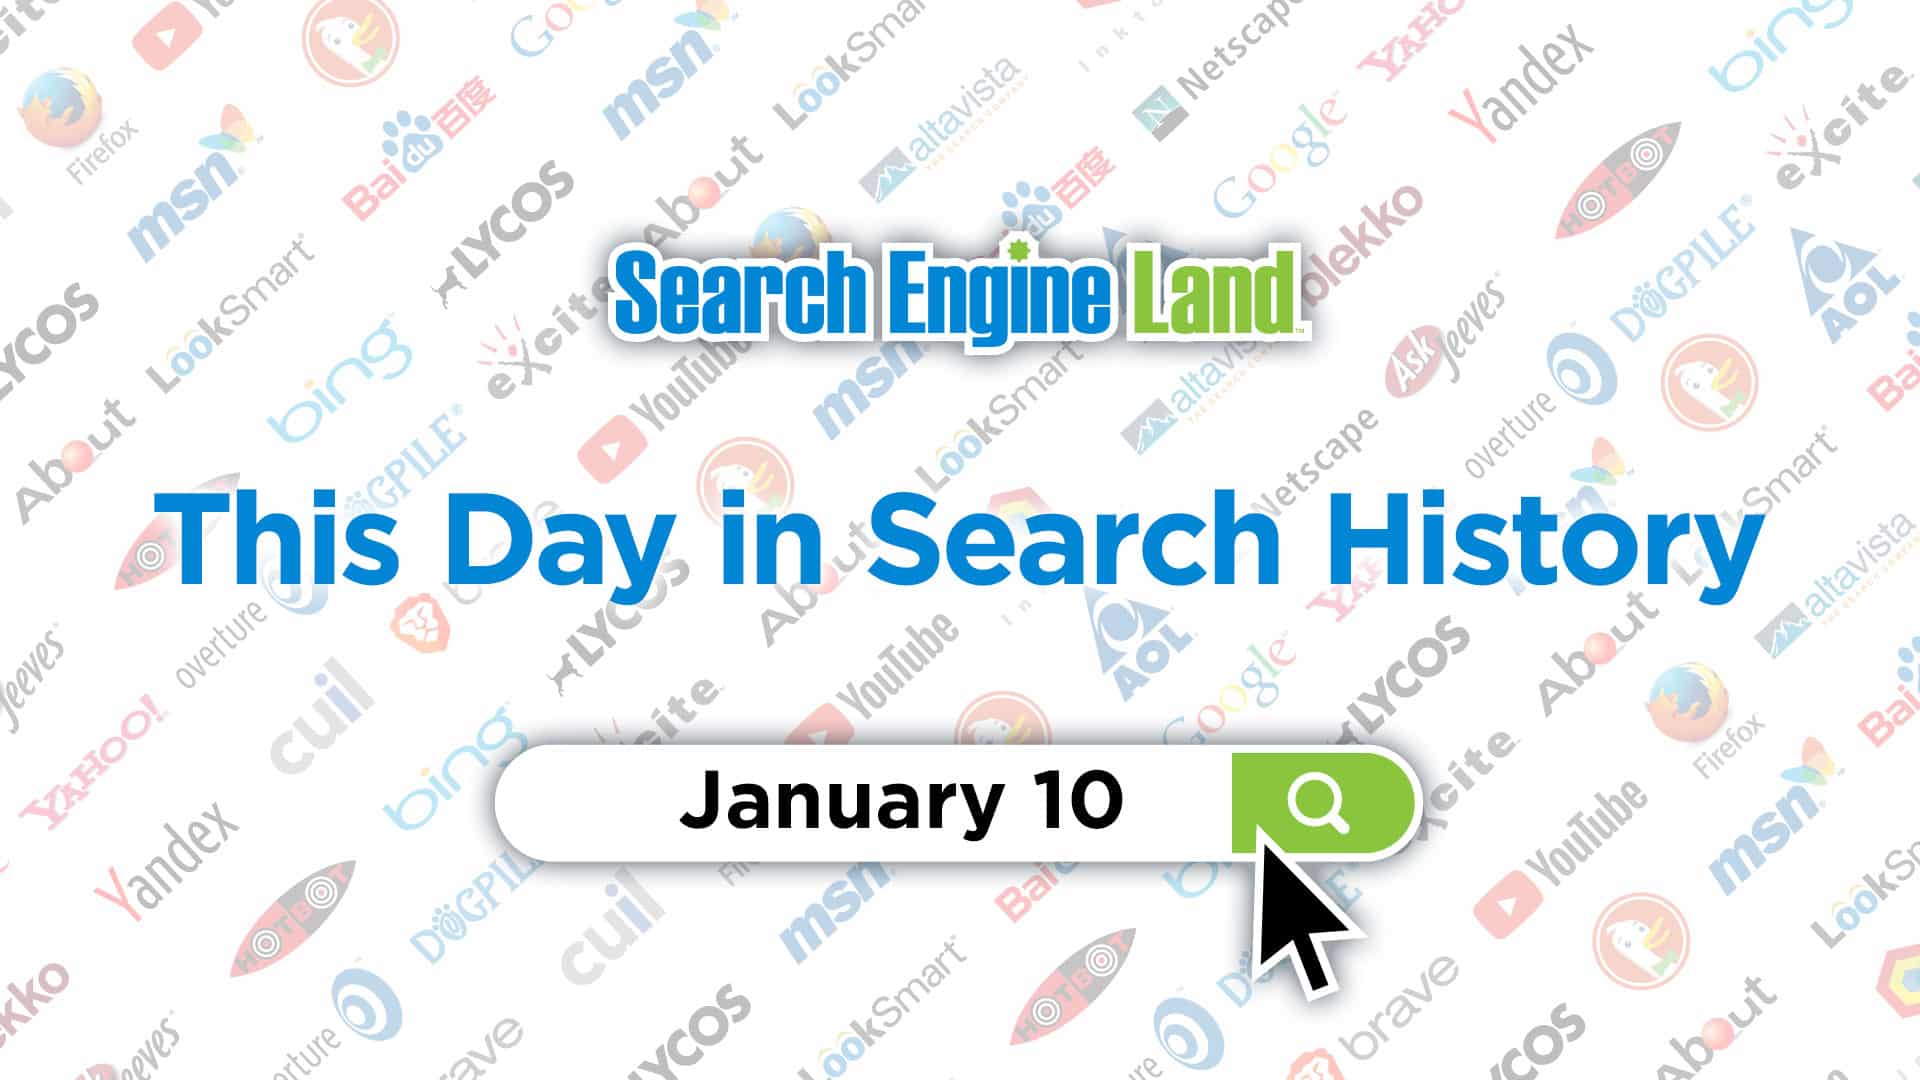 این روز در تاریخچه بازاریابی جستجو: 10 ژانویه, محتوا مارکتینگ